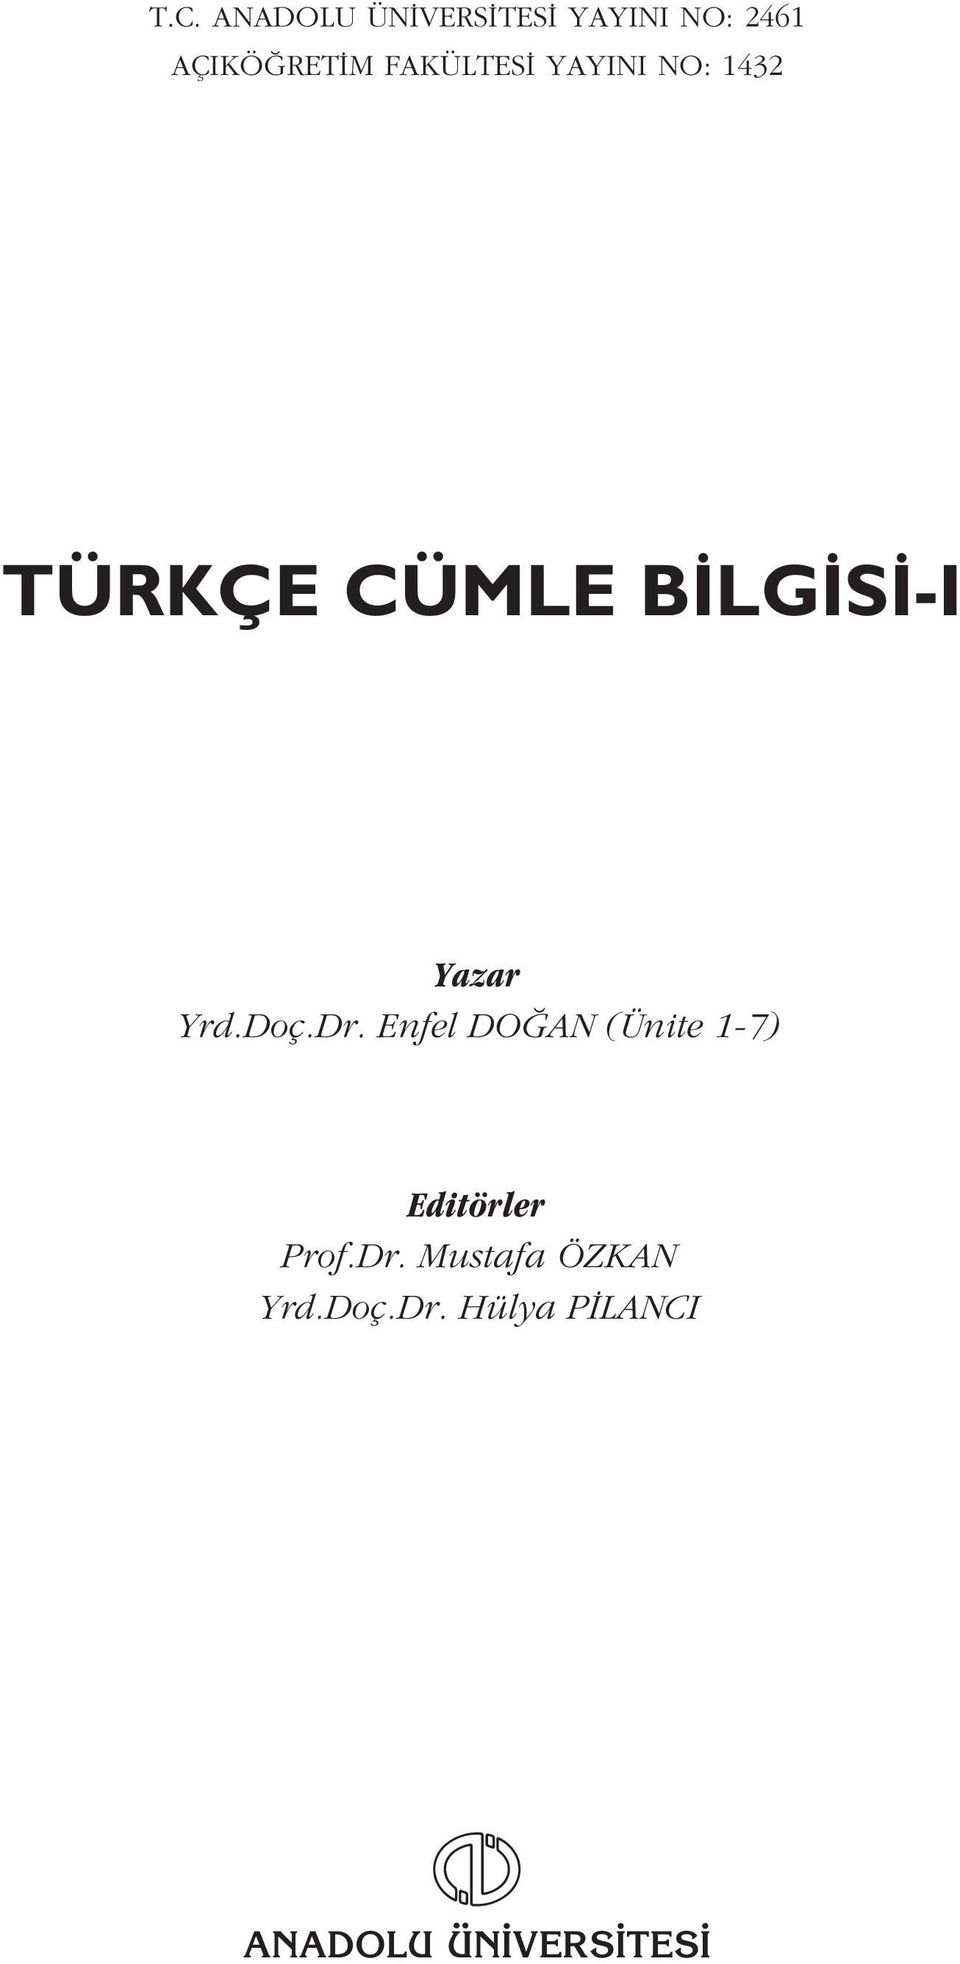 Yrd.Doç.Dr. Enfel DO AN (Ünite 1-7) Editörler Prof.Dr. Mustafa ÖZKAN Yrd.